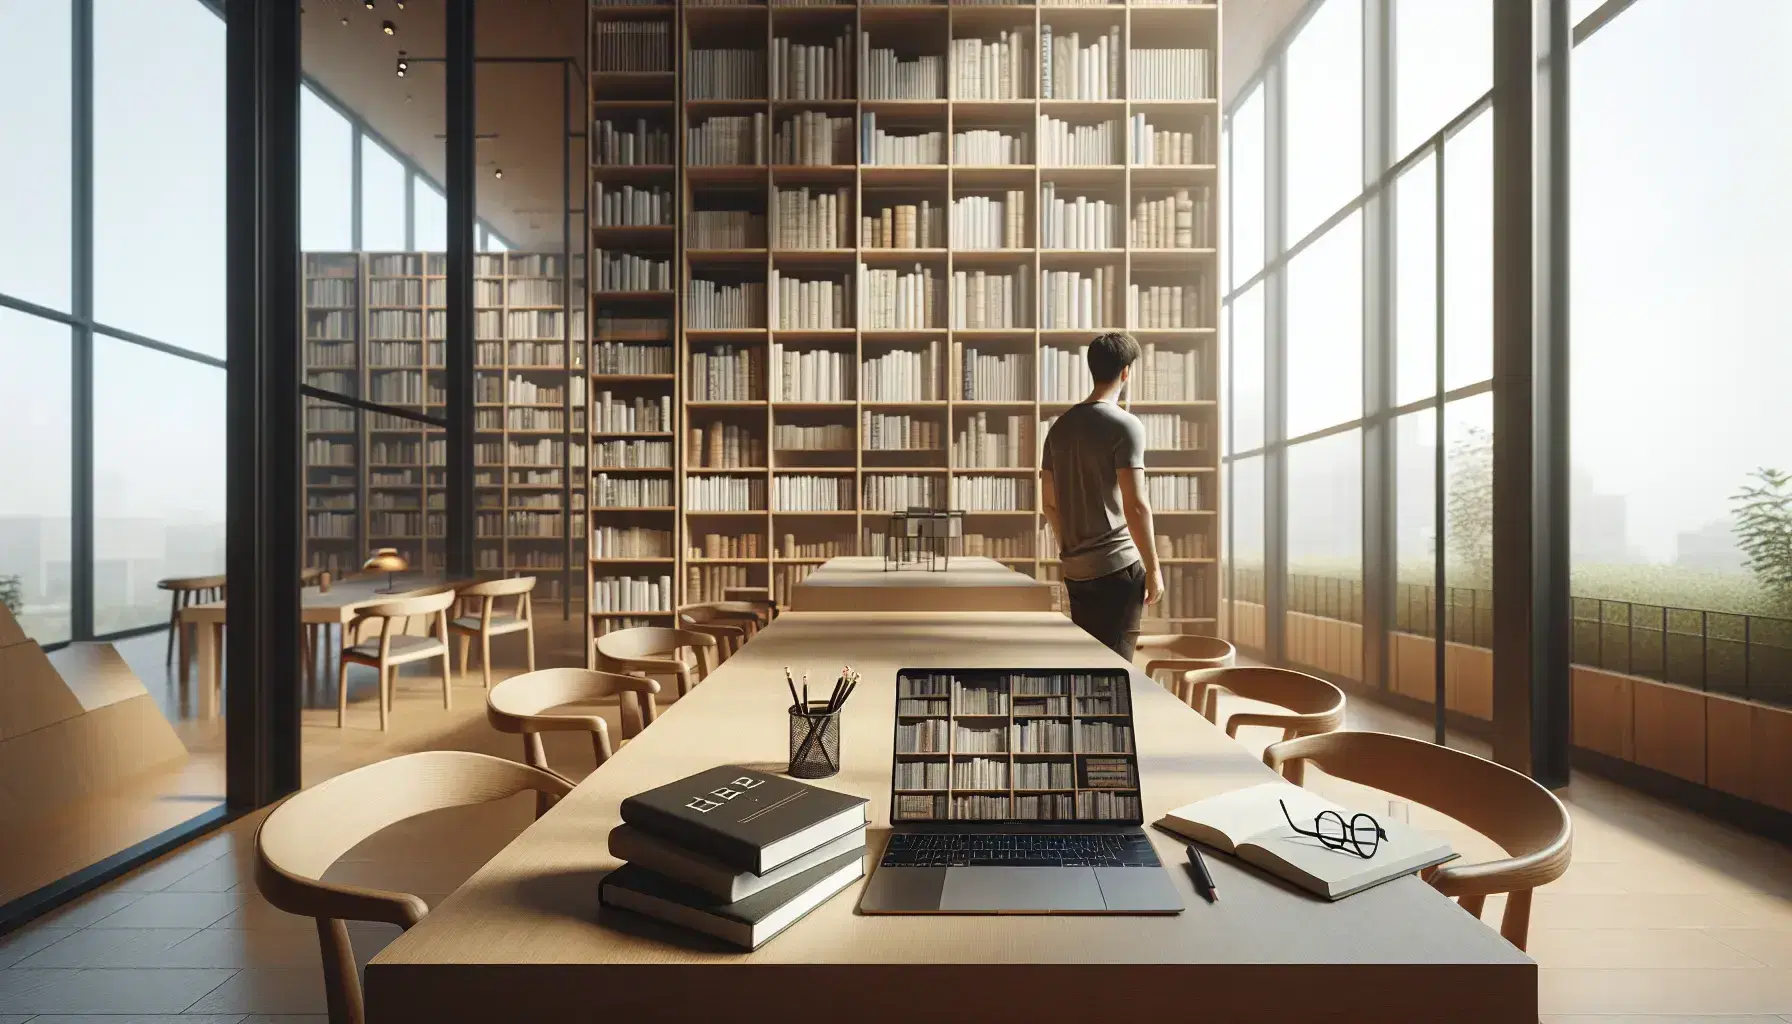 Biblioteca moderna con estanterías altas llenas de libros, mesa de madera con laptop abierta, gafas y cuaderno, y persona eligiendo un libro.